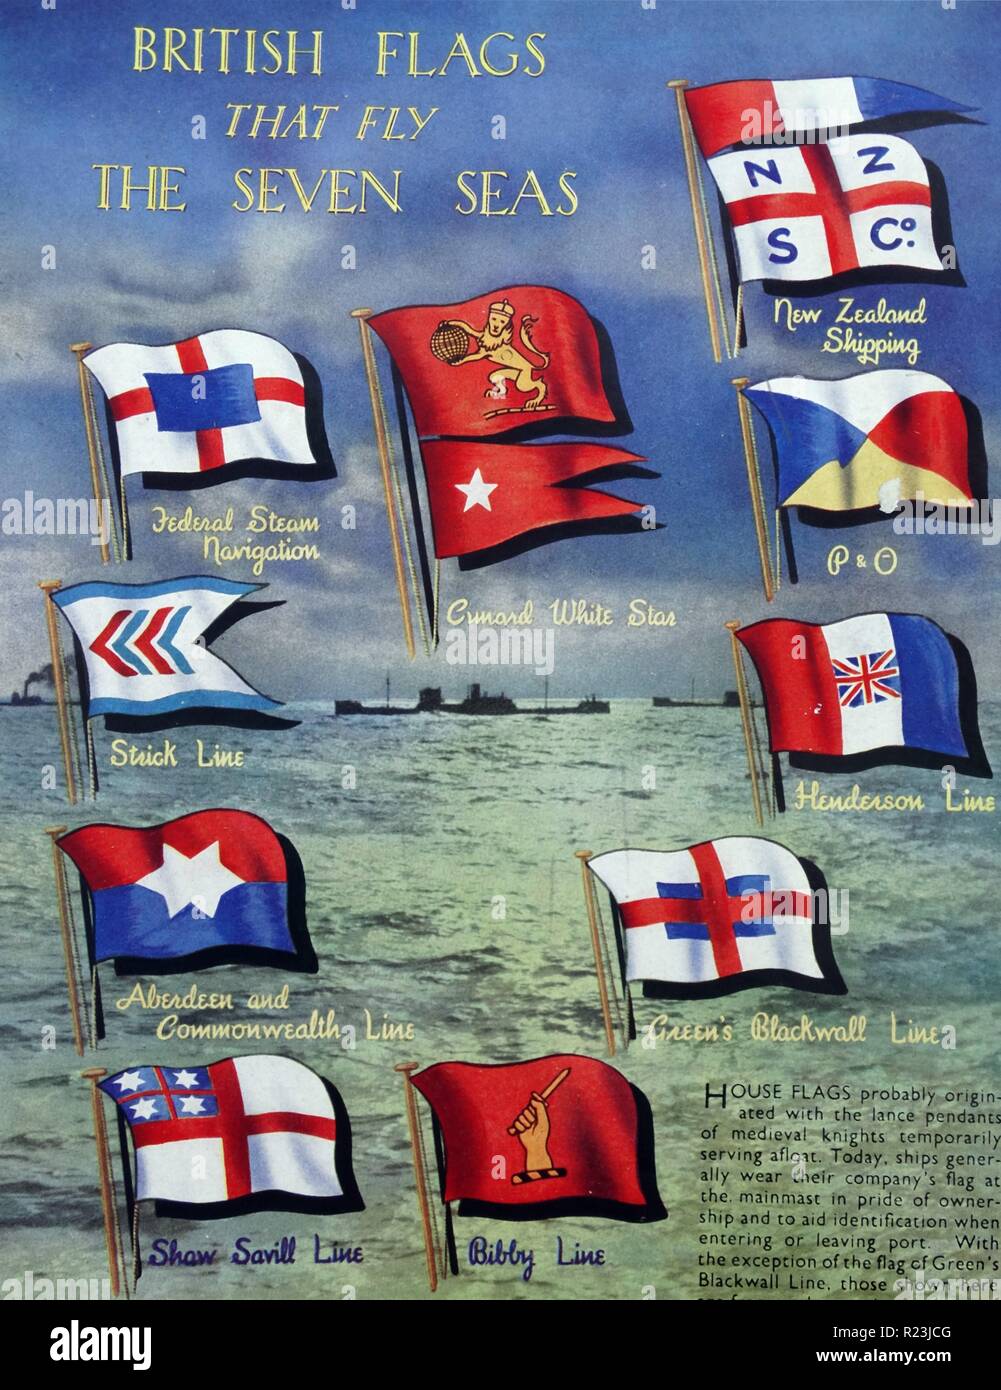 Farbe Plakat mit der Darstellung der britischen Flaggen, die sieben Meere fliegen. Mitte rechts: Cunard White Star; Neuseeland; P&O; Henderson Linie; Grün Blackwall Linie; Bibby Line; Shaw, Savill Leitung; Aberdeen und Commonwealth; Stick Line; Bund Steam Navigation; Vom 1939 Stockfoto